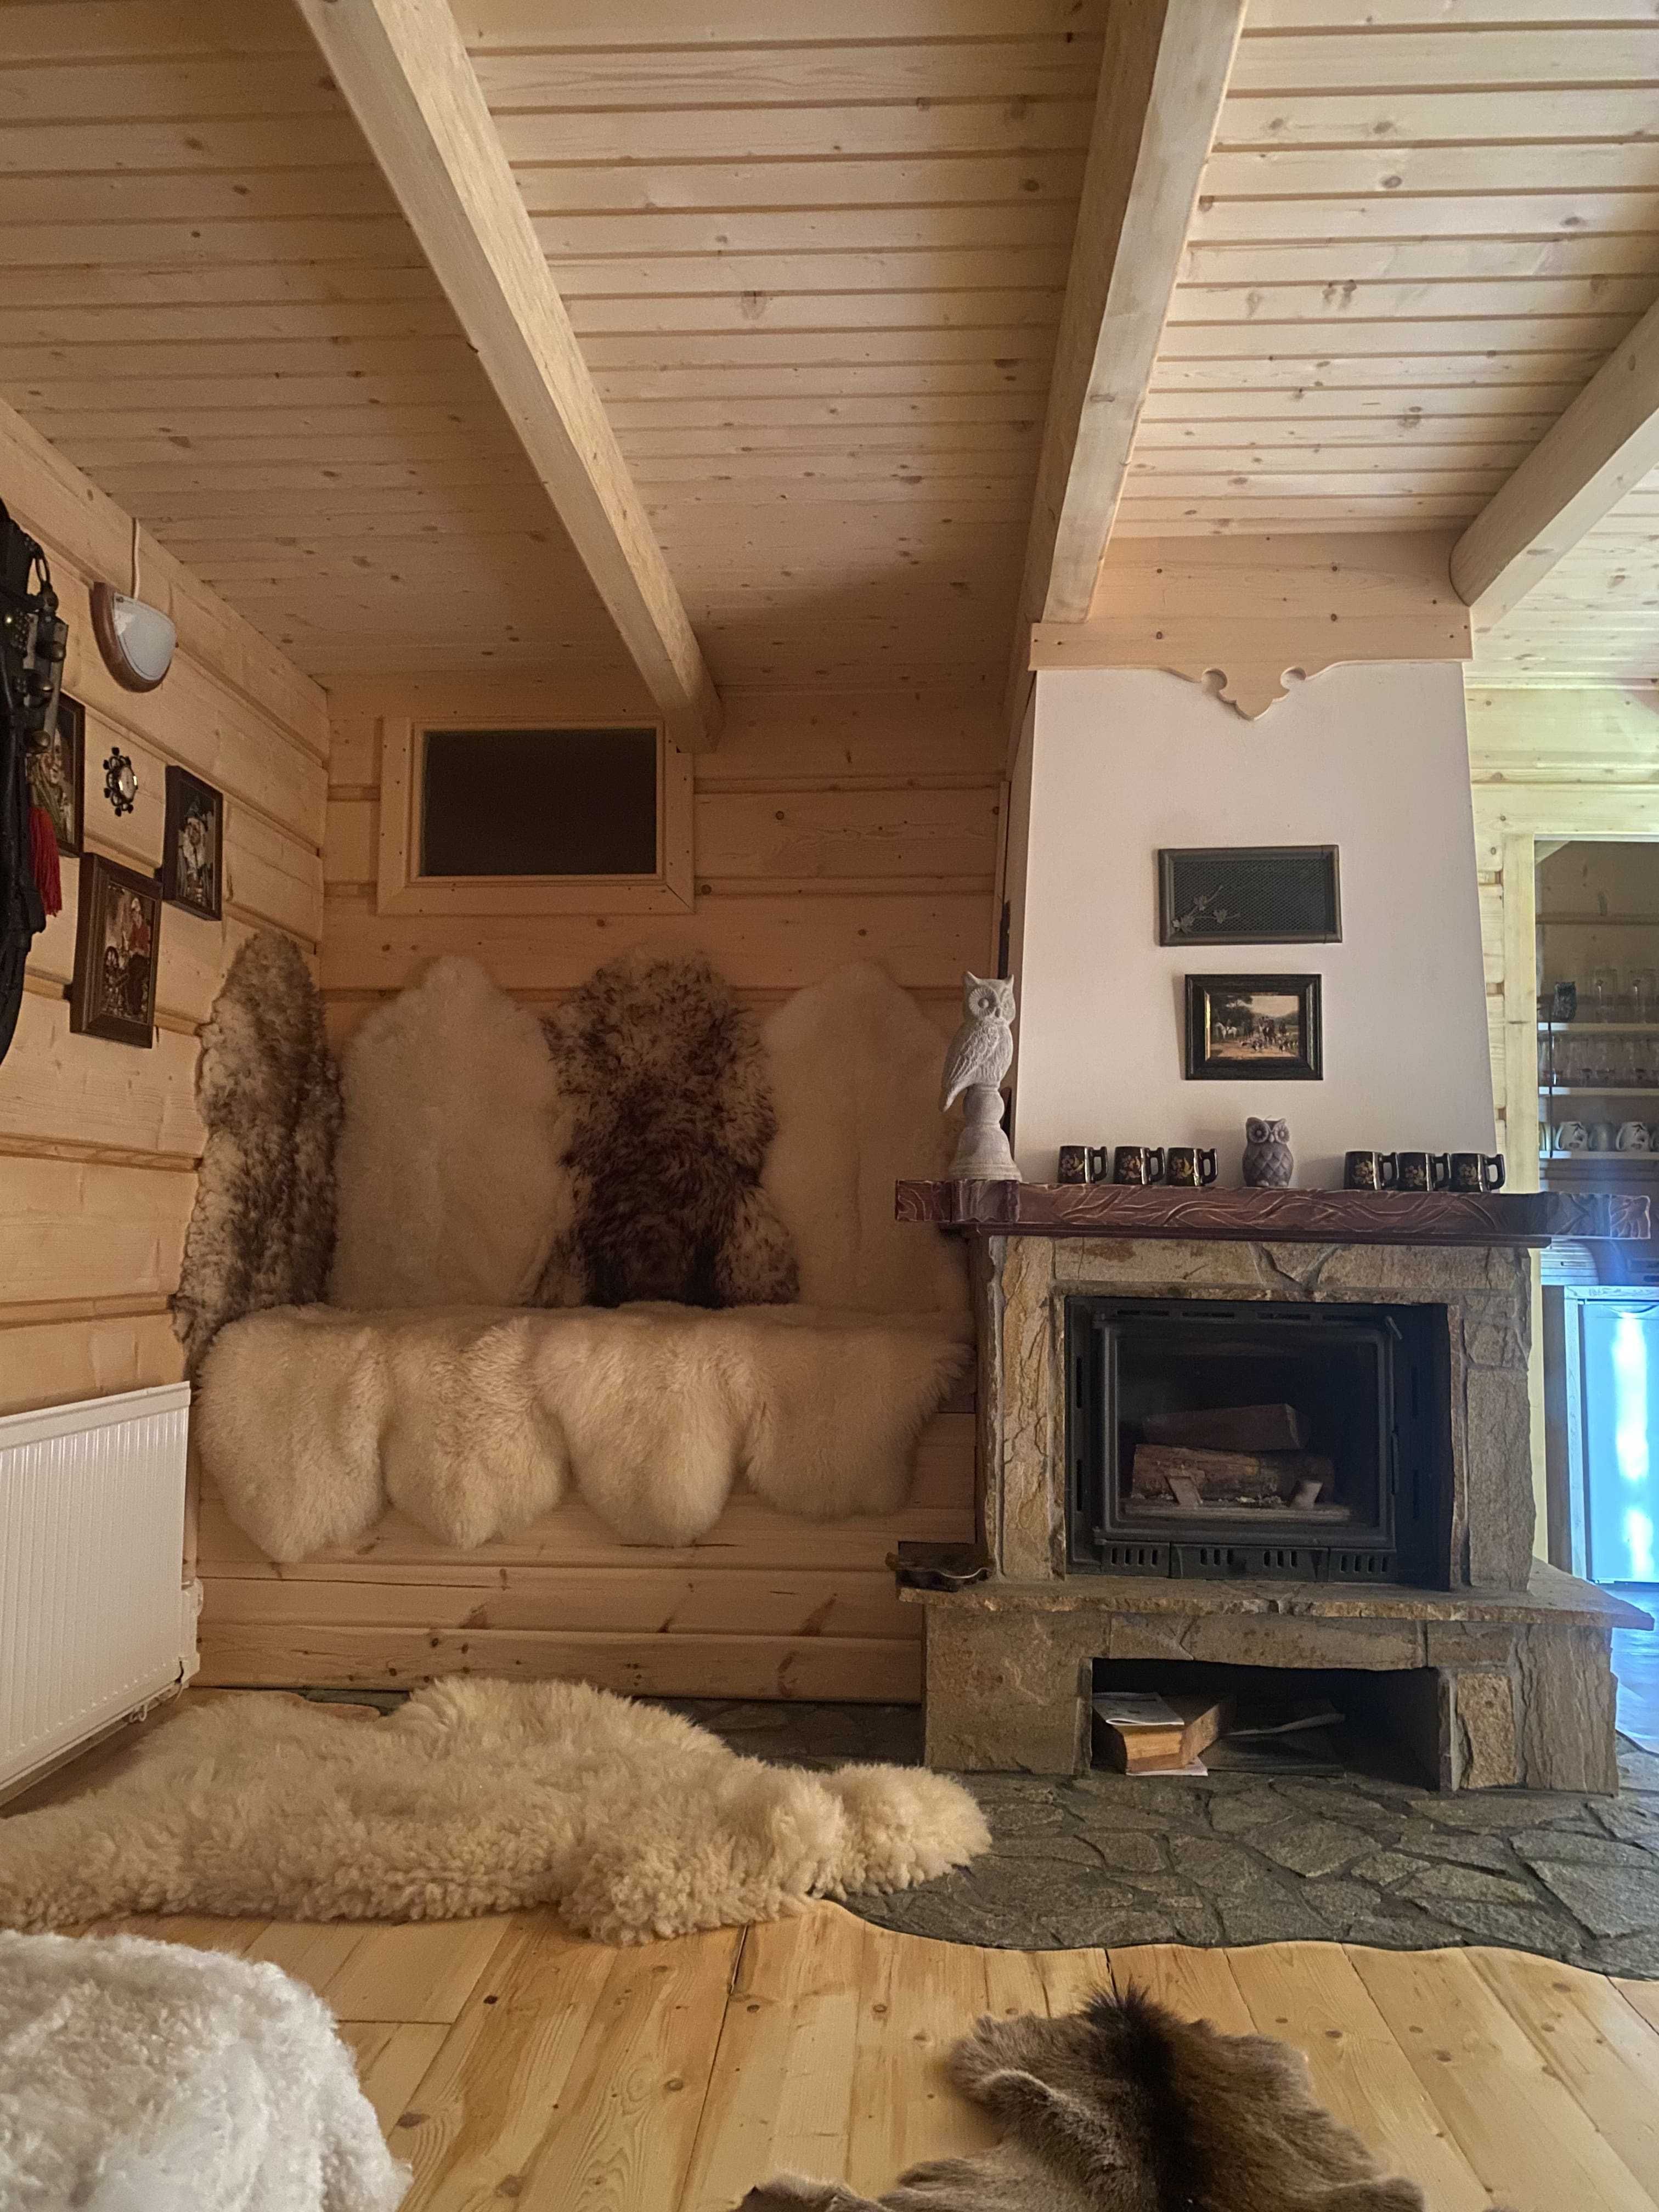 Domek w górach Nowy Targ sauna 8 osób 800 zł/za dobę